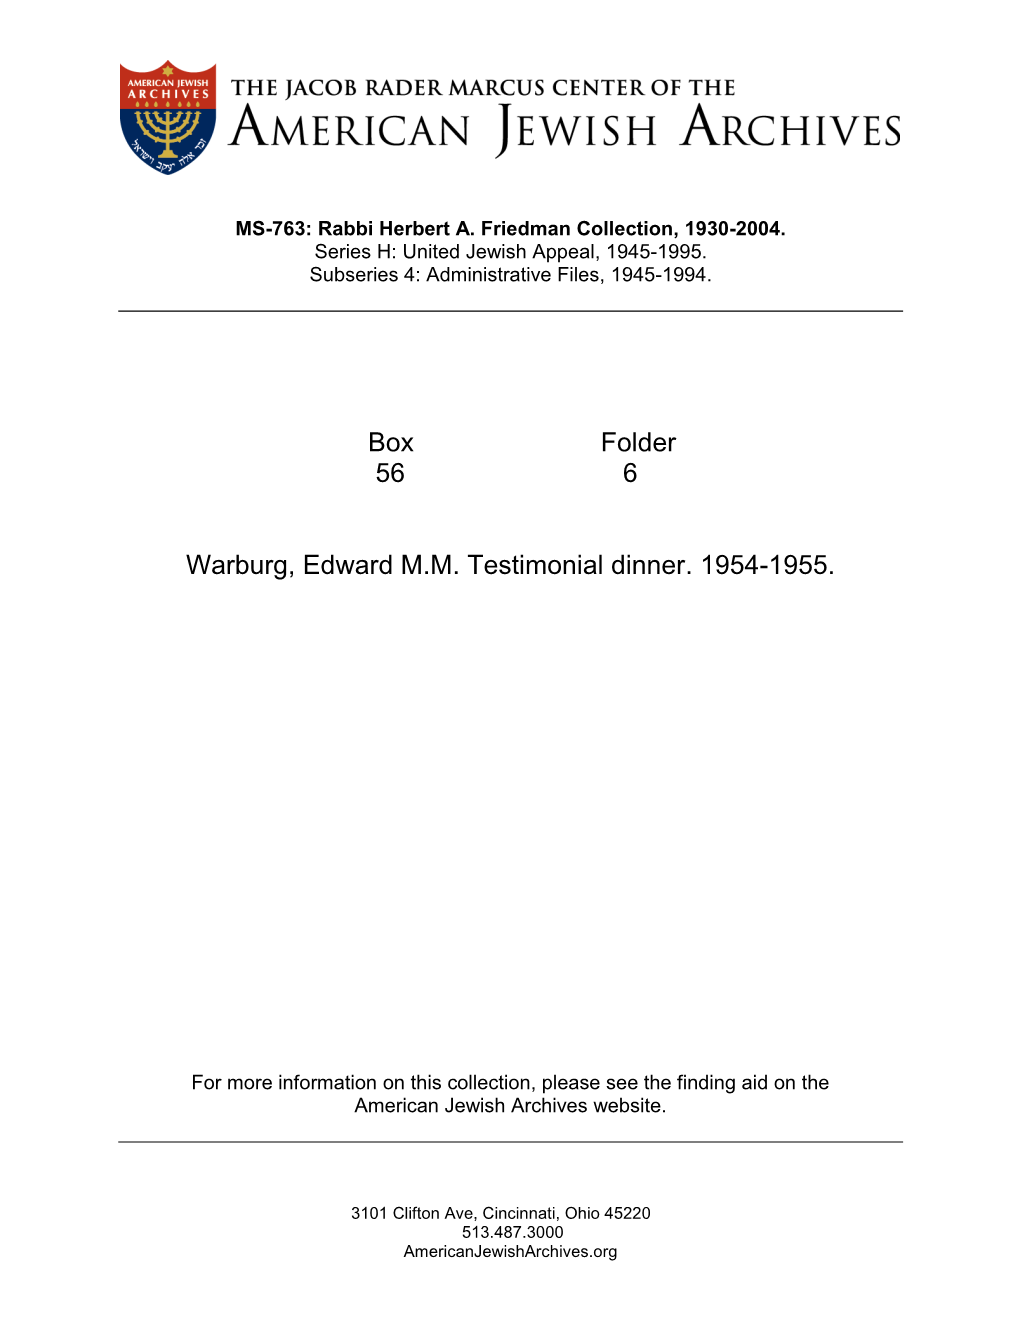 Box Folder 56 6 Warburg, Edward M.M. Testimonial Dinner. 1954-1955